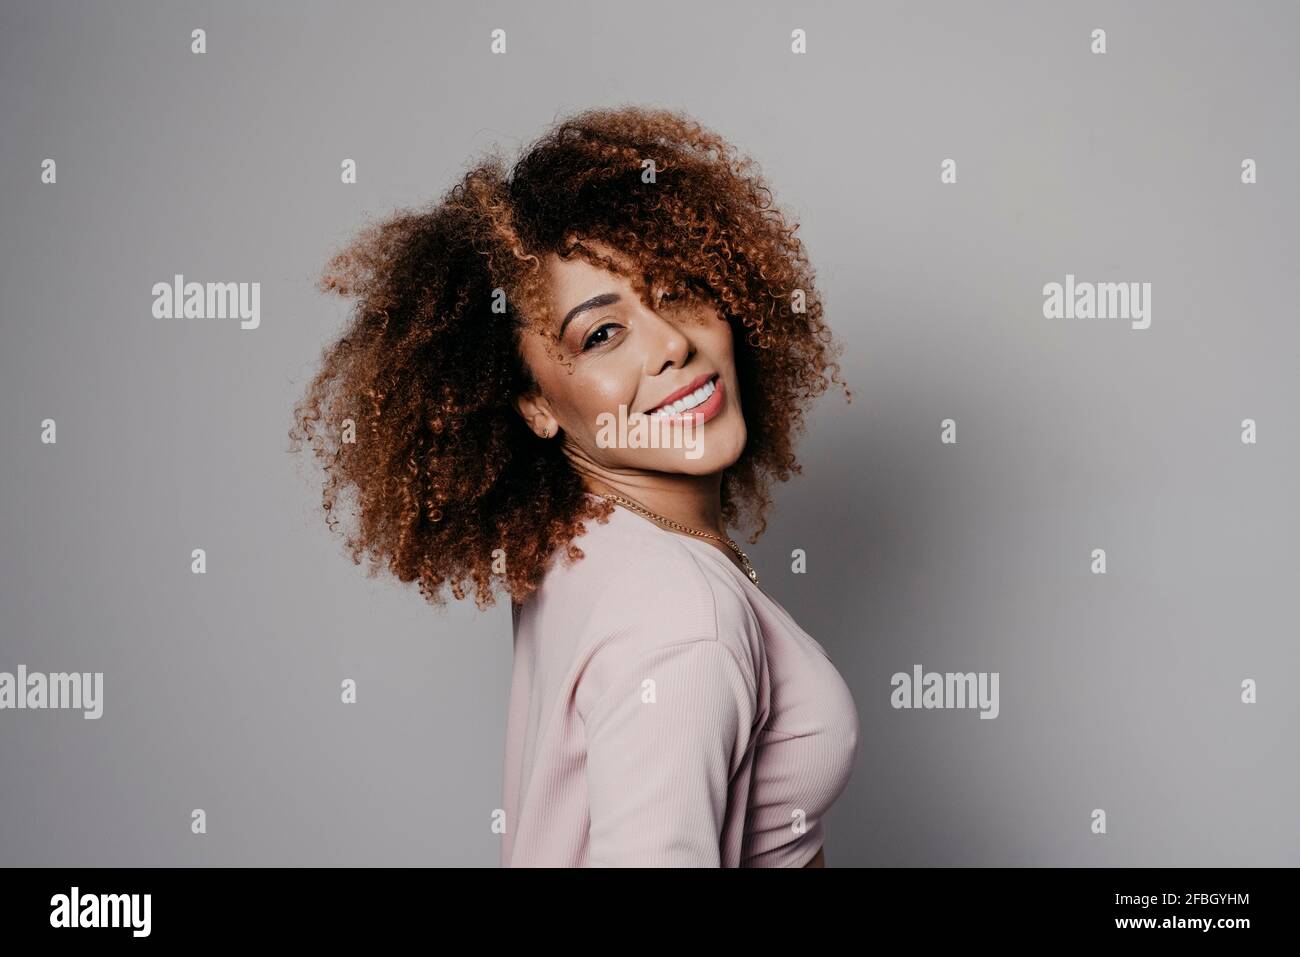 Lächelnde junge attraktive Frau vor grauem Hintergrund Stockfoto